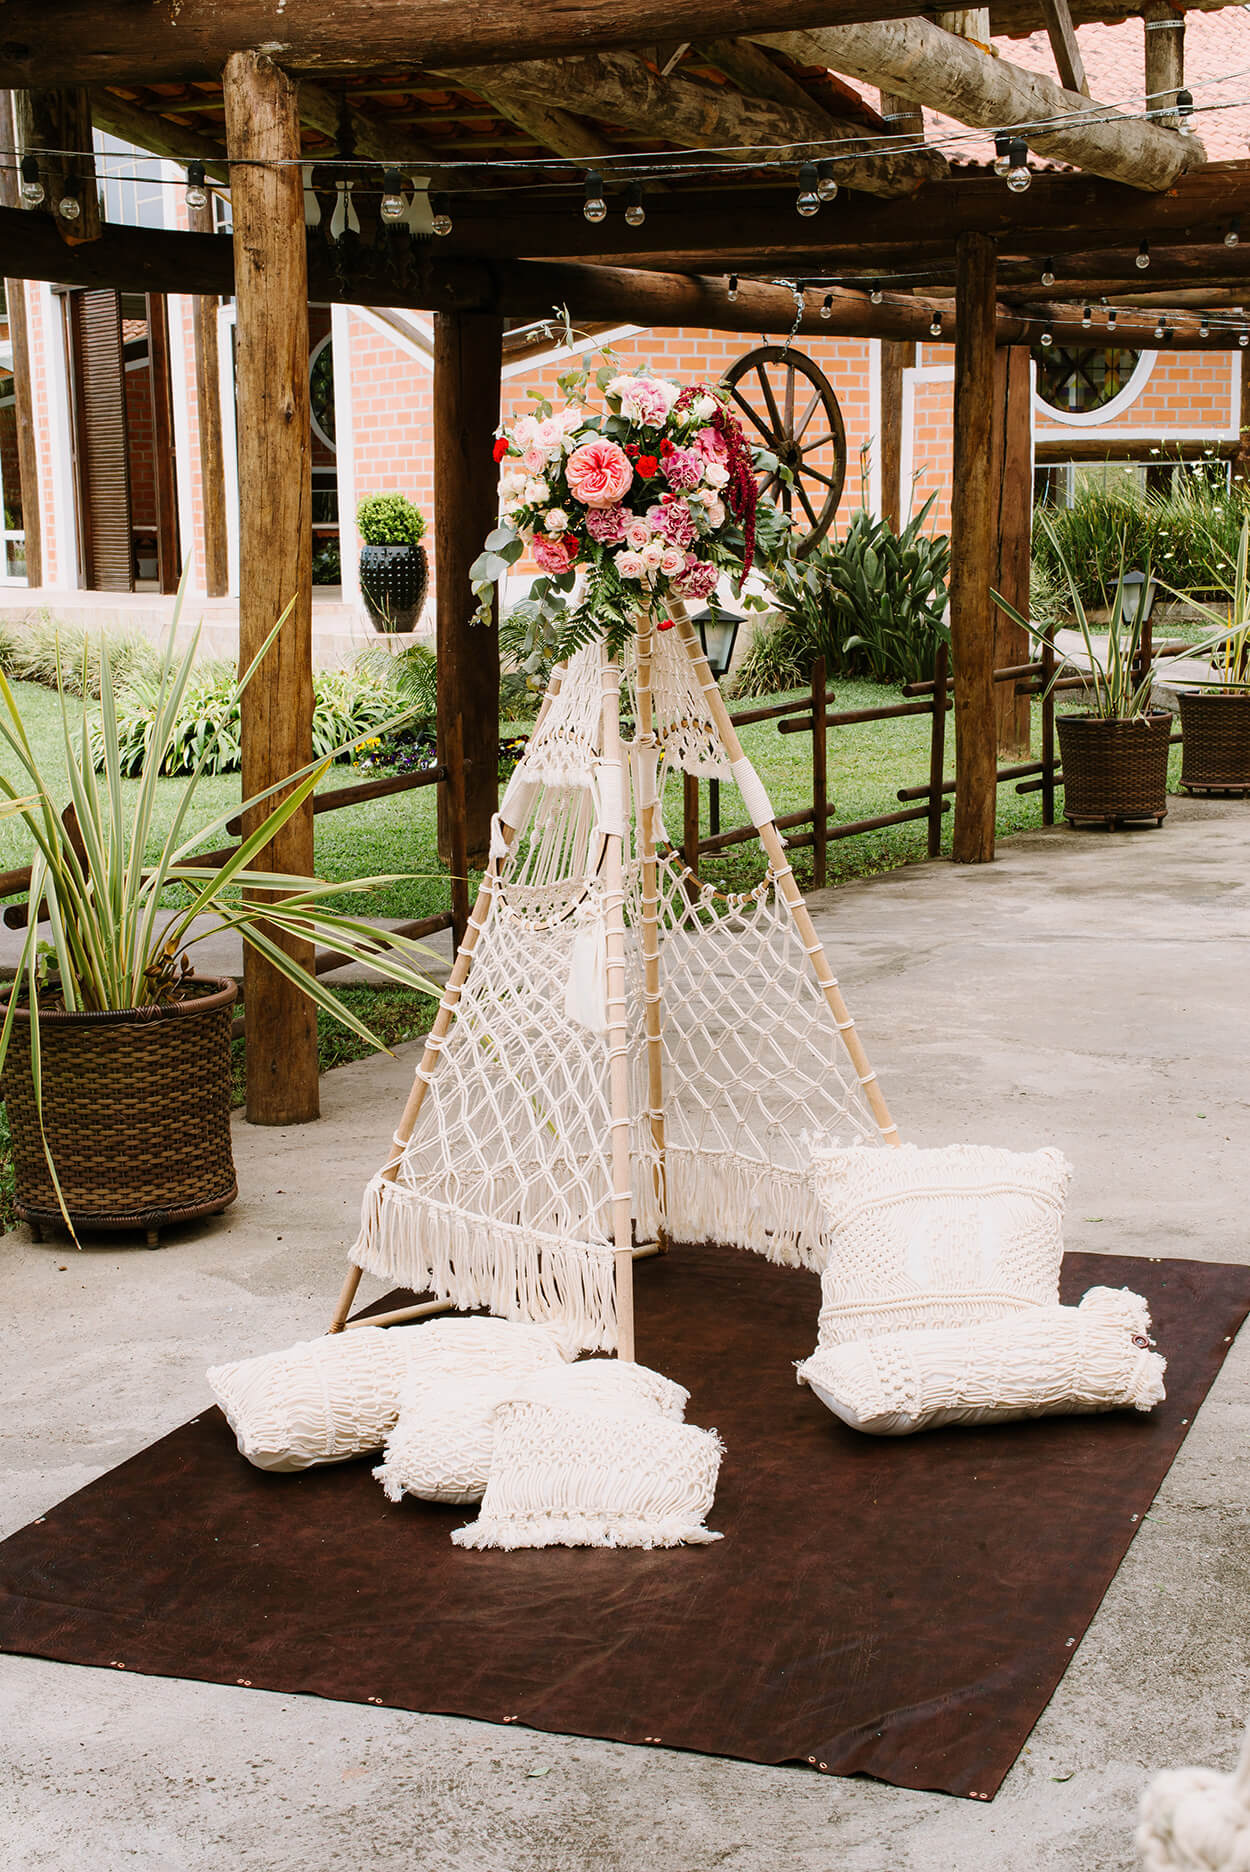 cabana feita com macrame com flores brancas e rosas no topo e almofadas brancas no chão